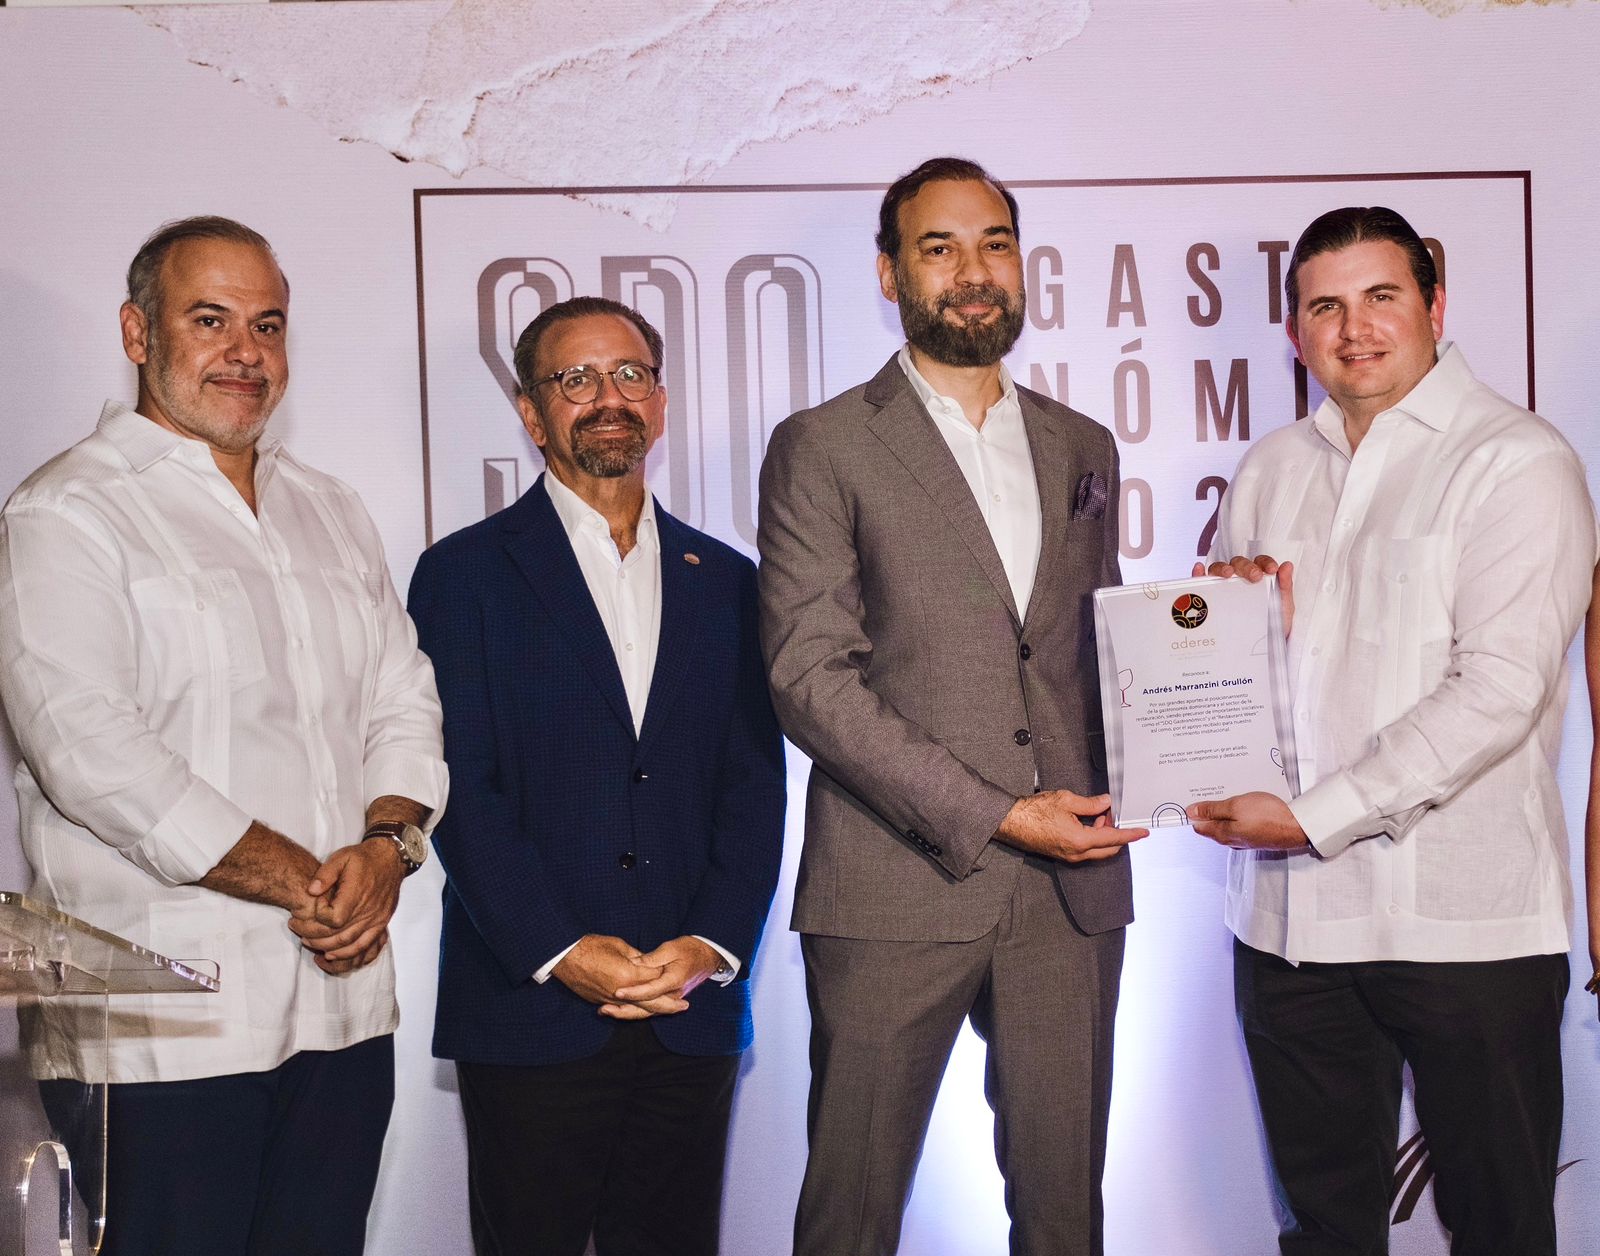 Aderes reconoce a Andrés Marranzini Grullón por sus aportes al sector gastronómico